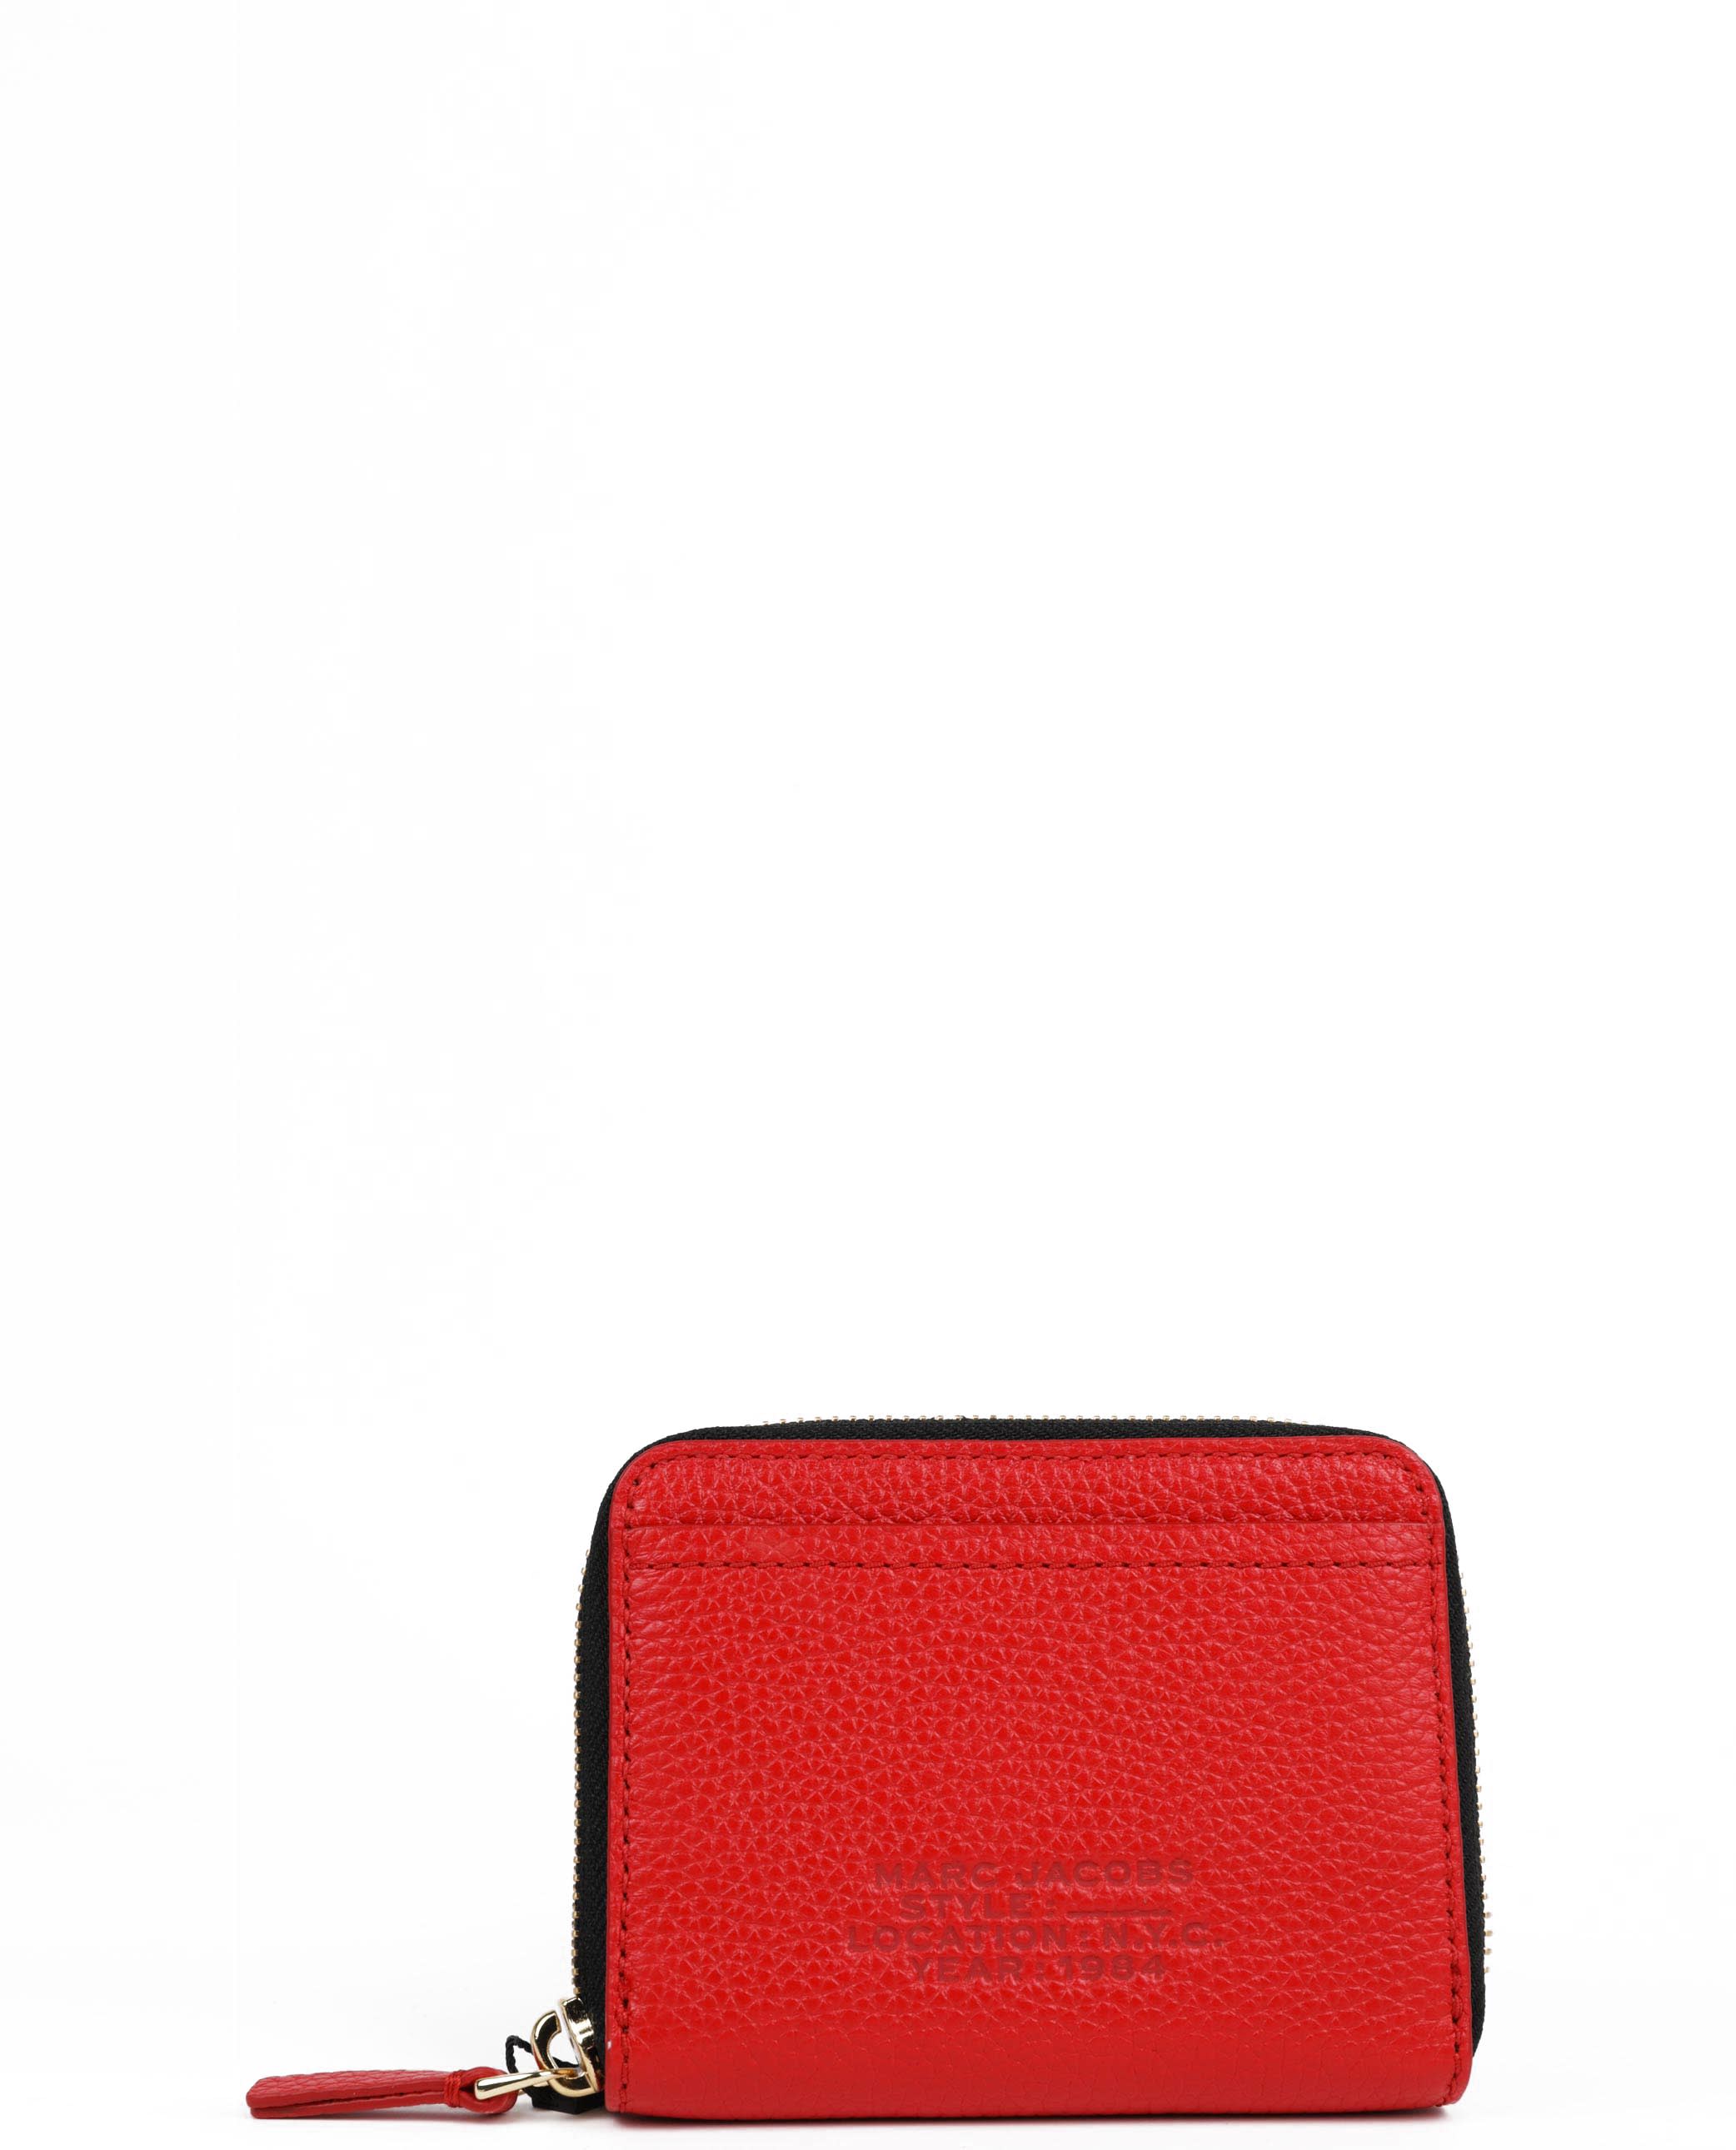 Marc Jacobs - The Zip Around Wallet, Women , Red